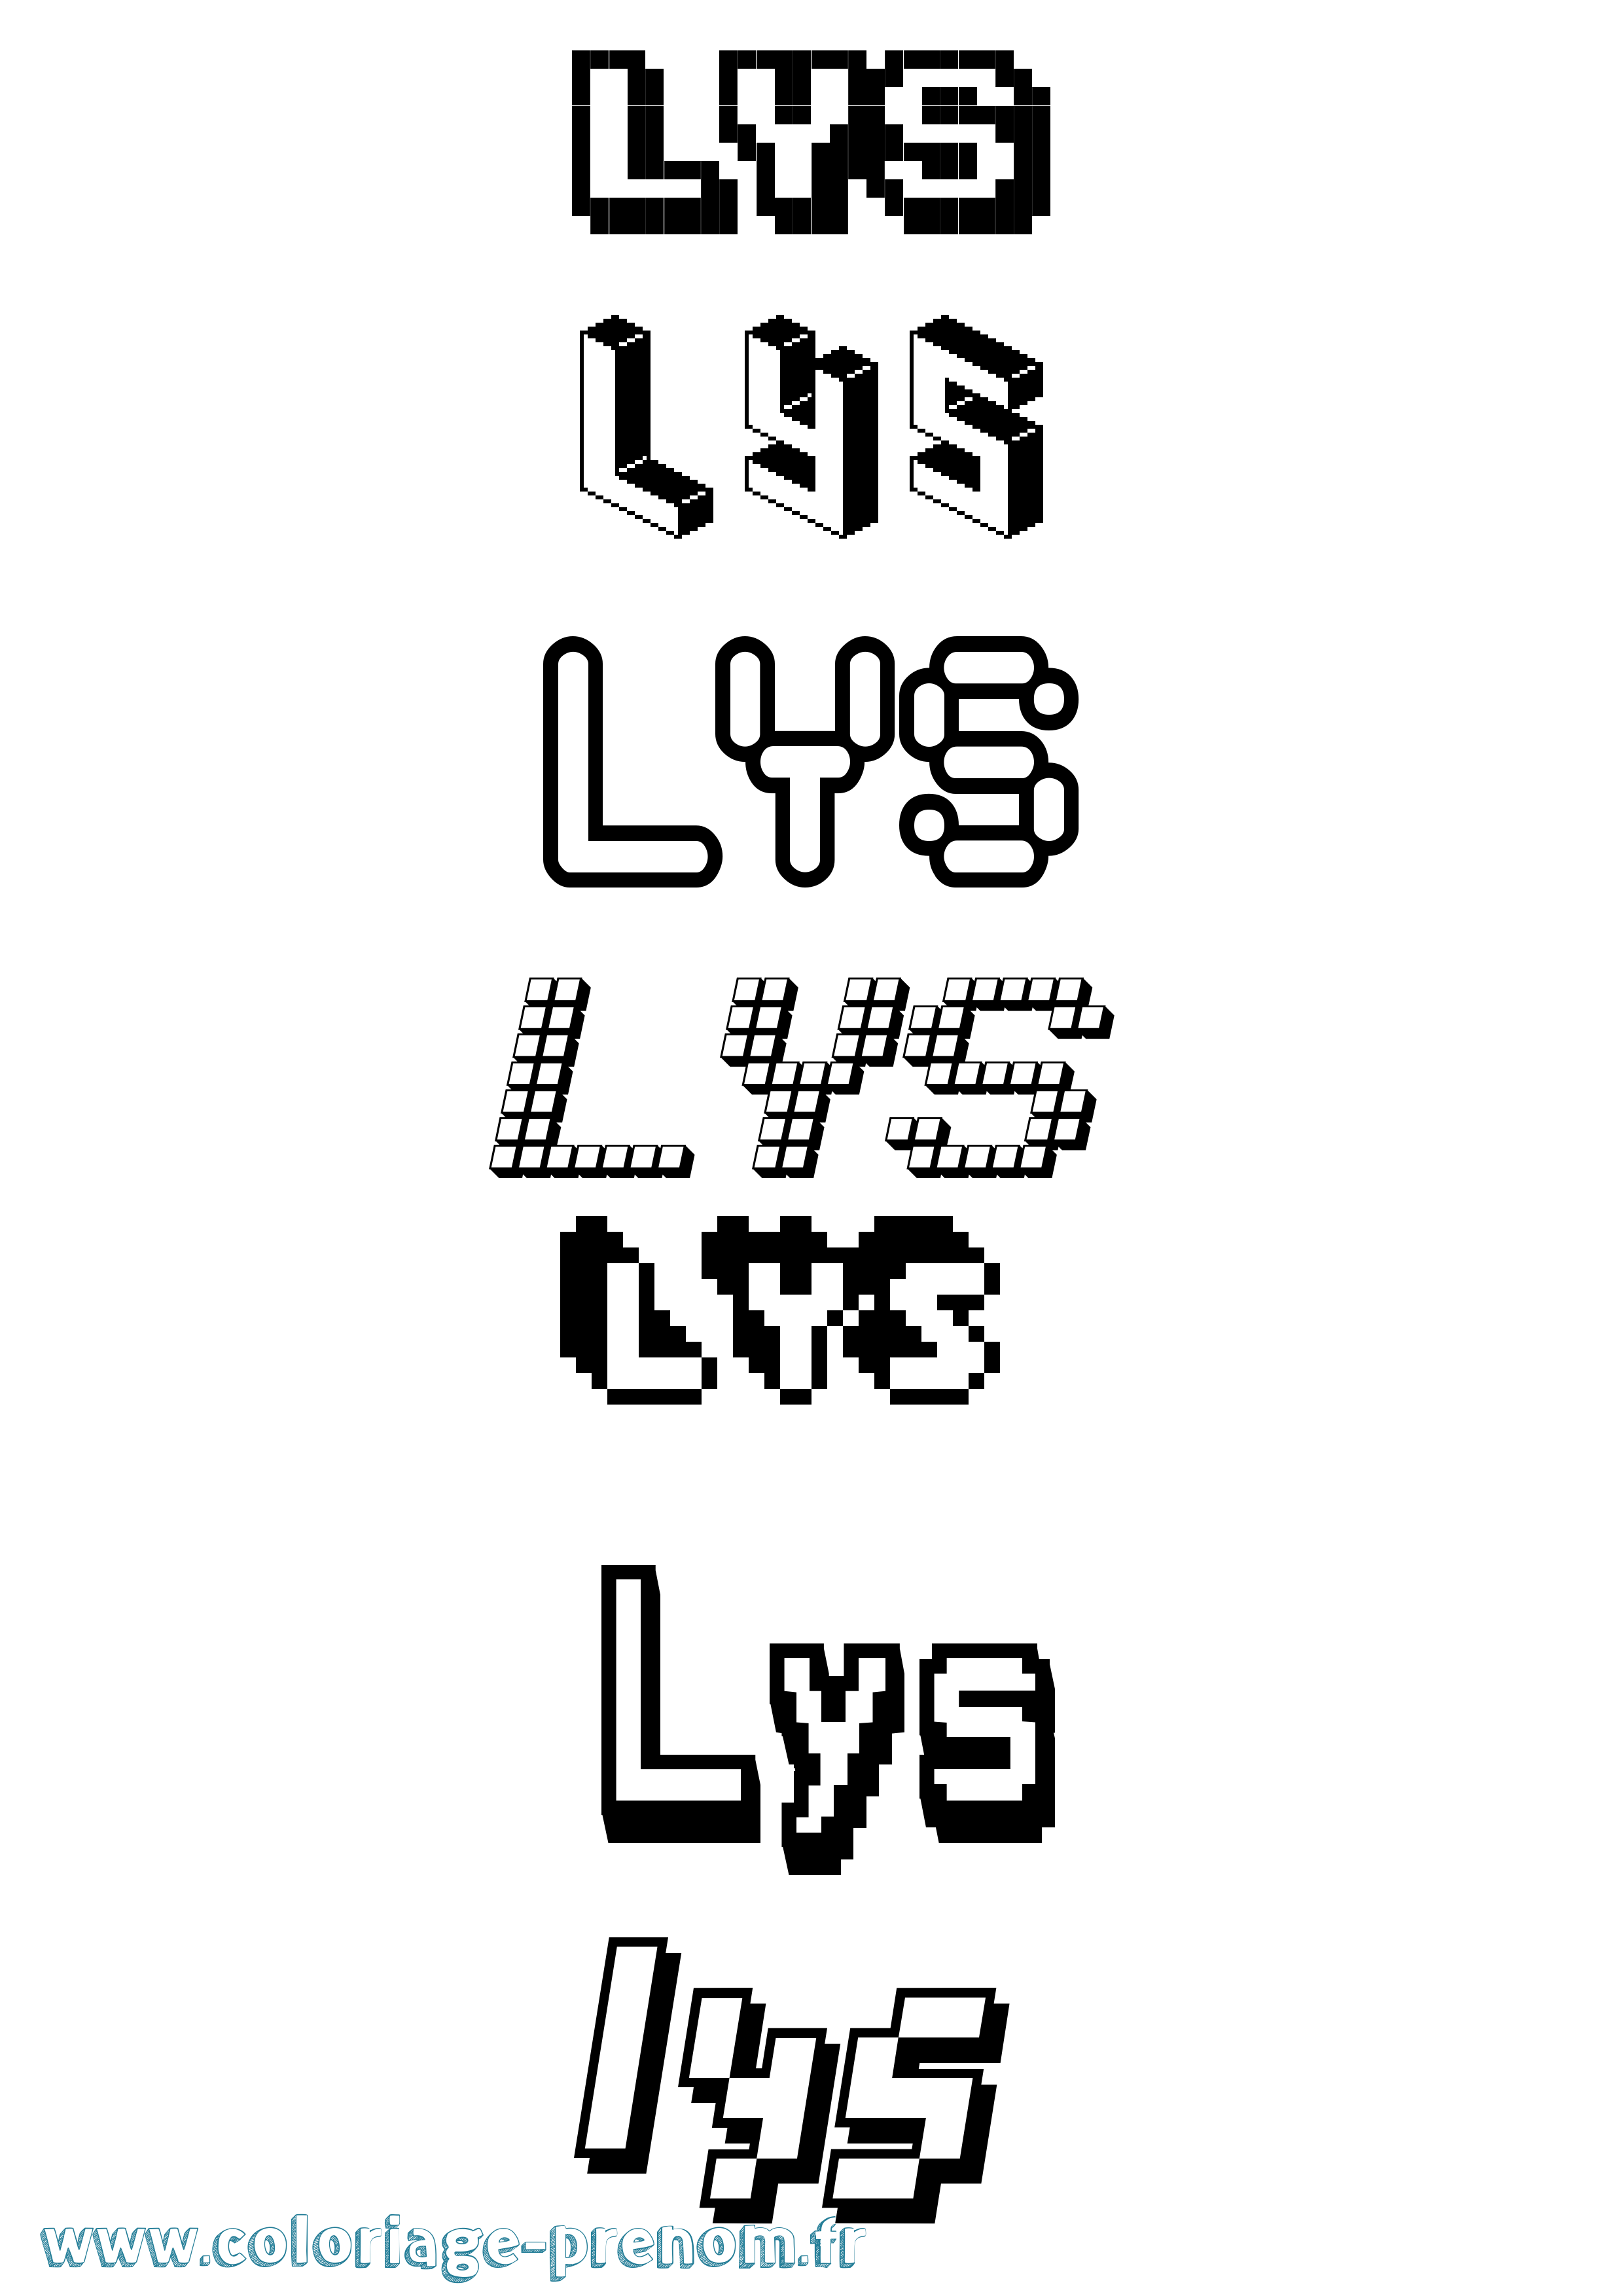 Coloriage prénom Lys Pixel